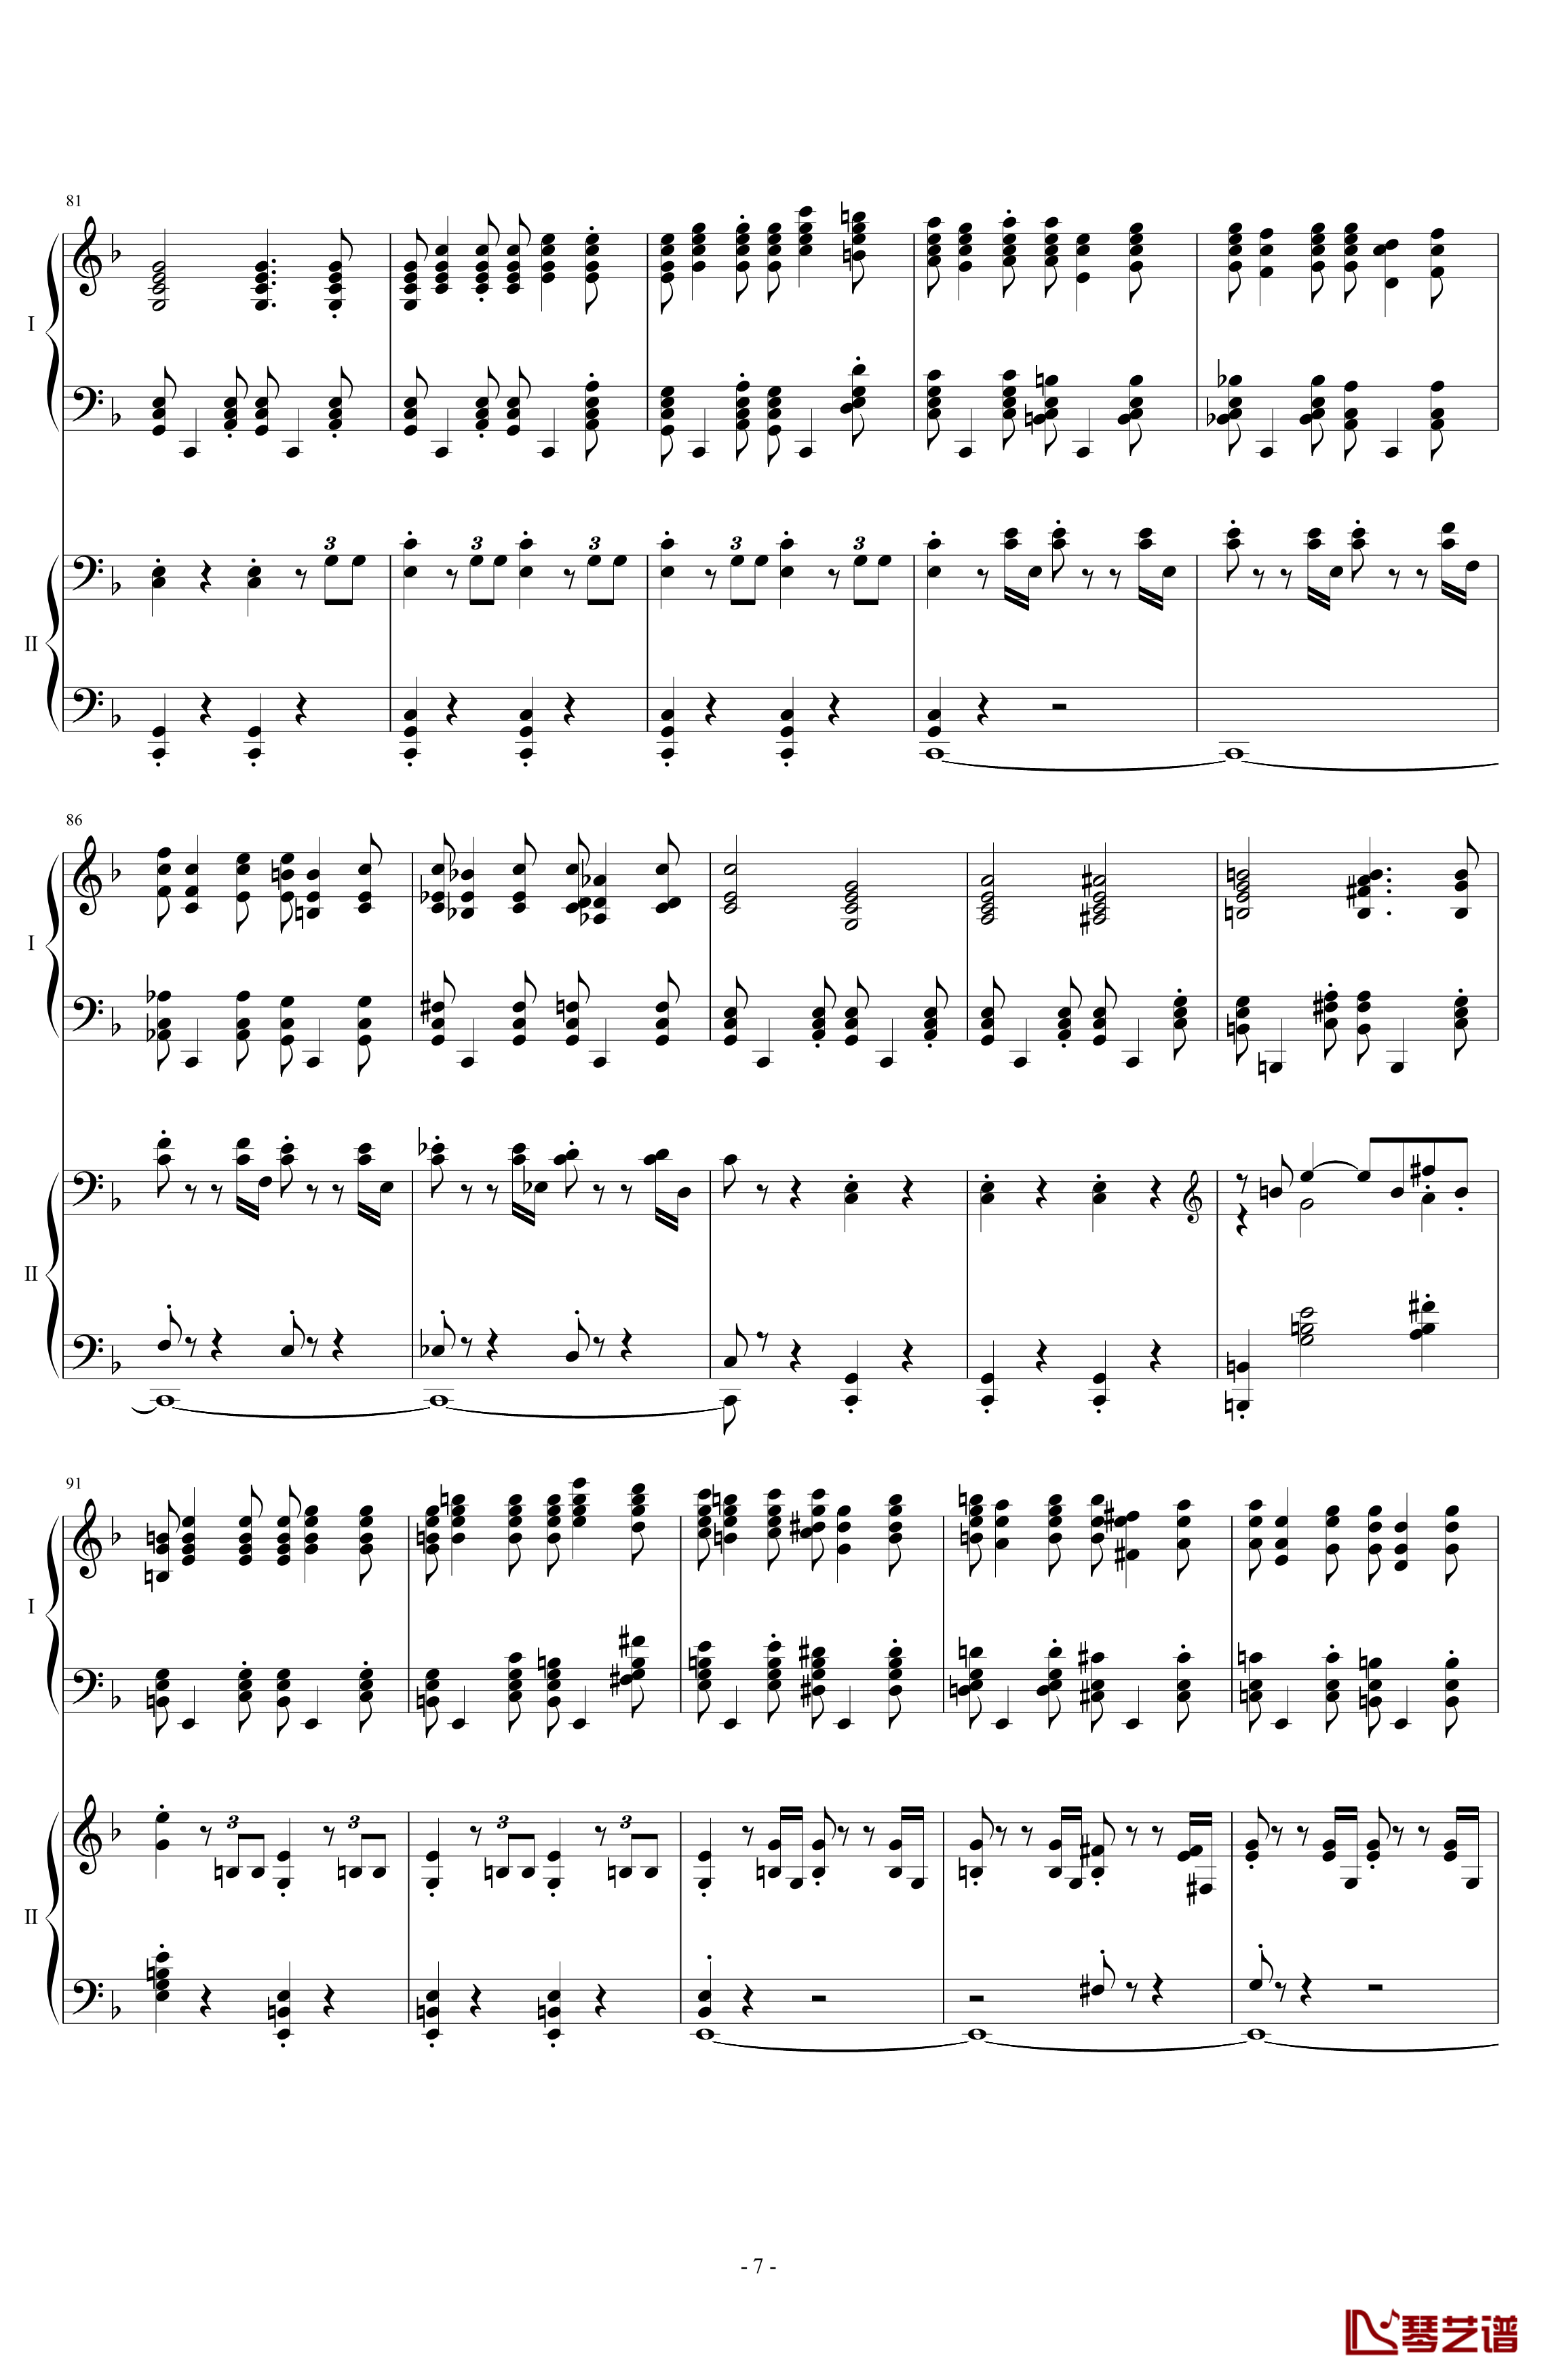 拉三第三乐章41页双钢琴钢琴谱-最难钢琴曲-拉赫马尼若夫7